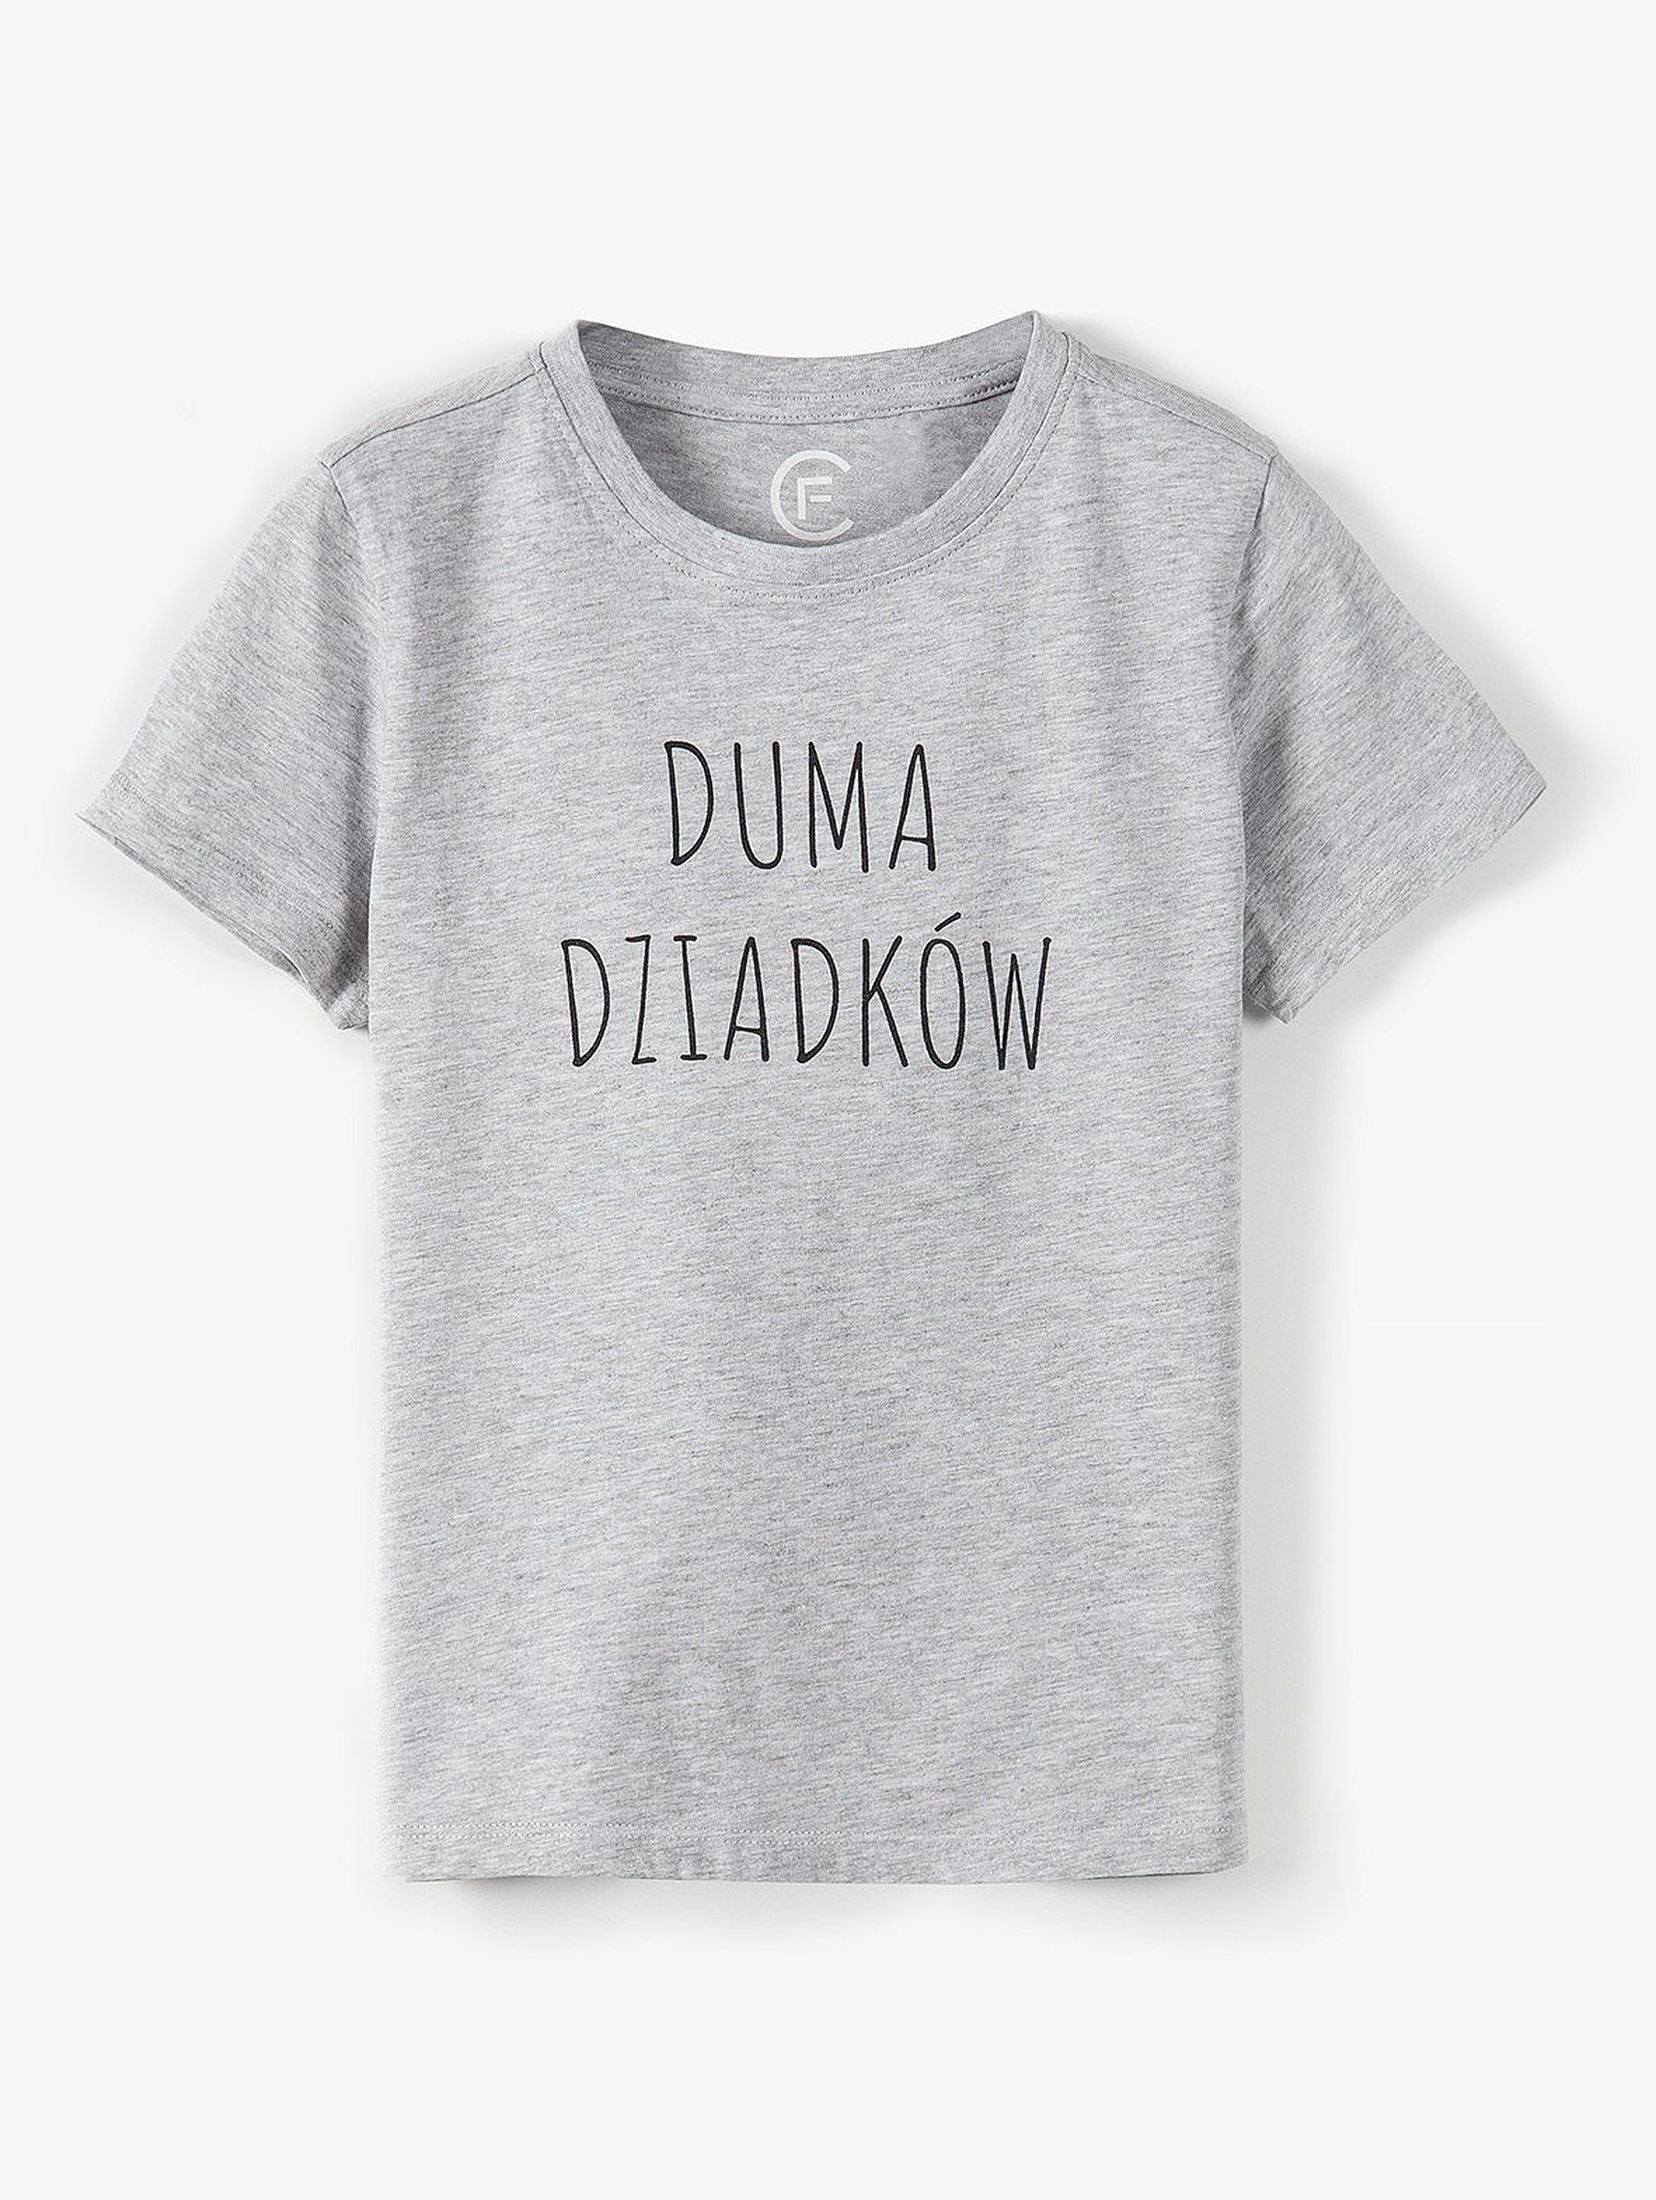 T-shirt dla dziecka- Duma Dziadków